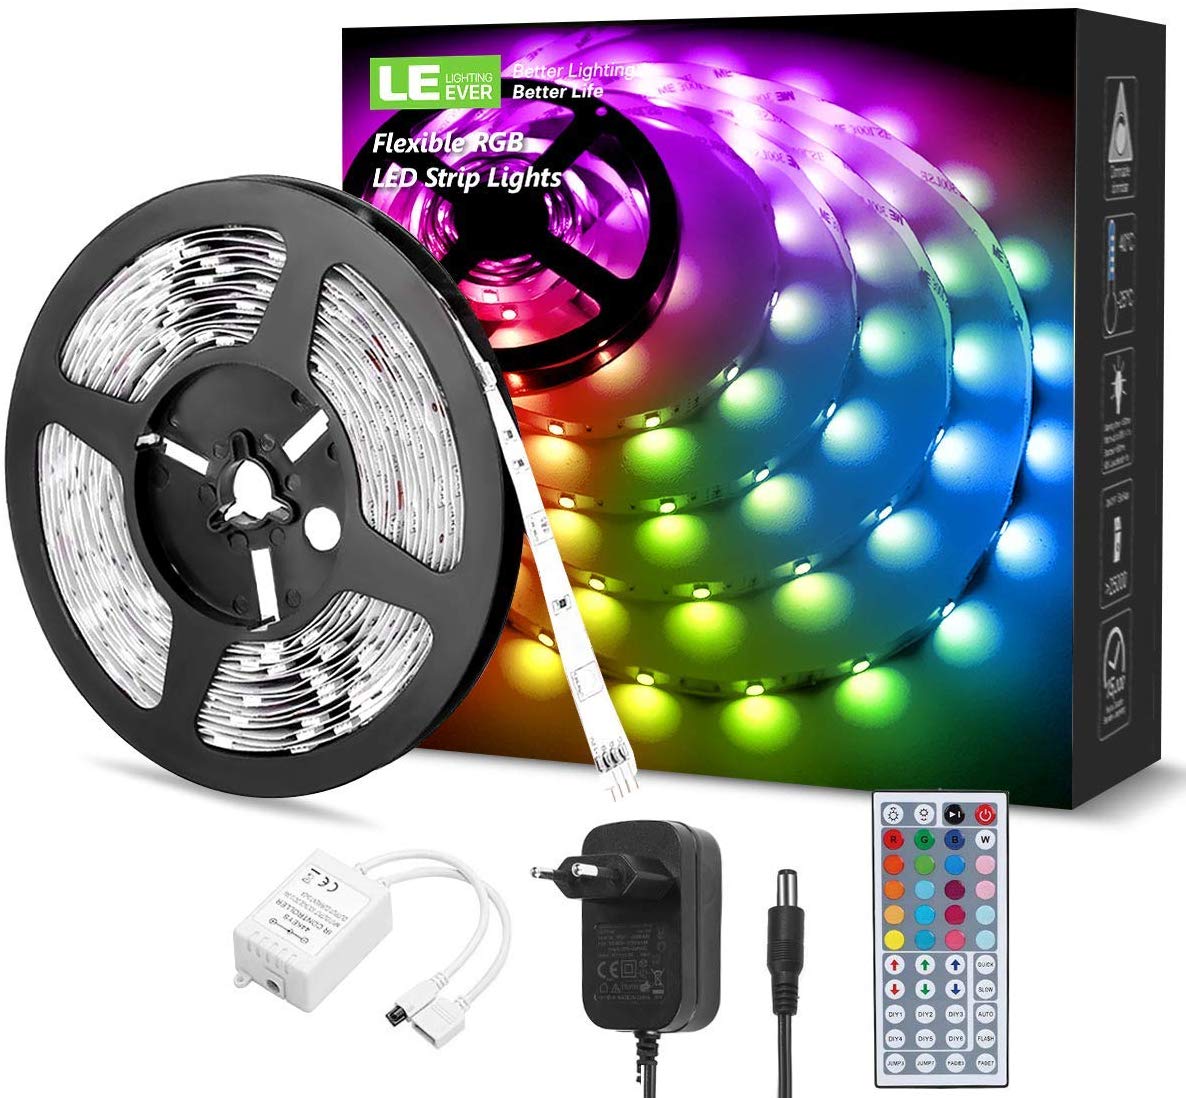 LED-Leiste 150 SMD RGB LEDs 5m IP67 Lauflicht McShine LED-RUN 50 450077